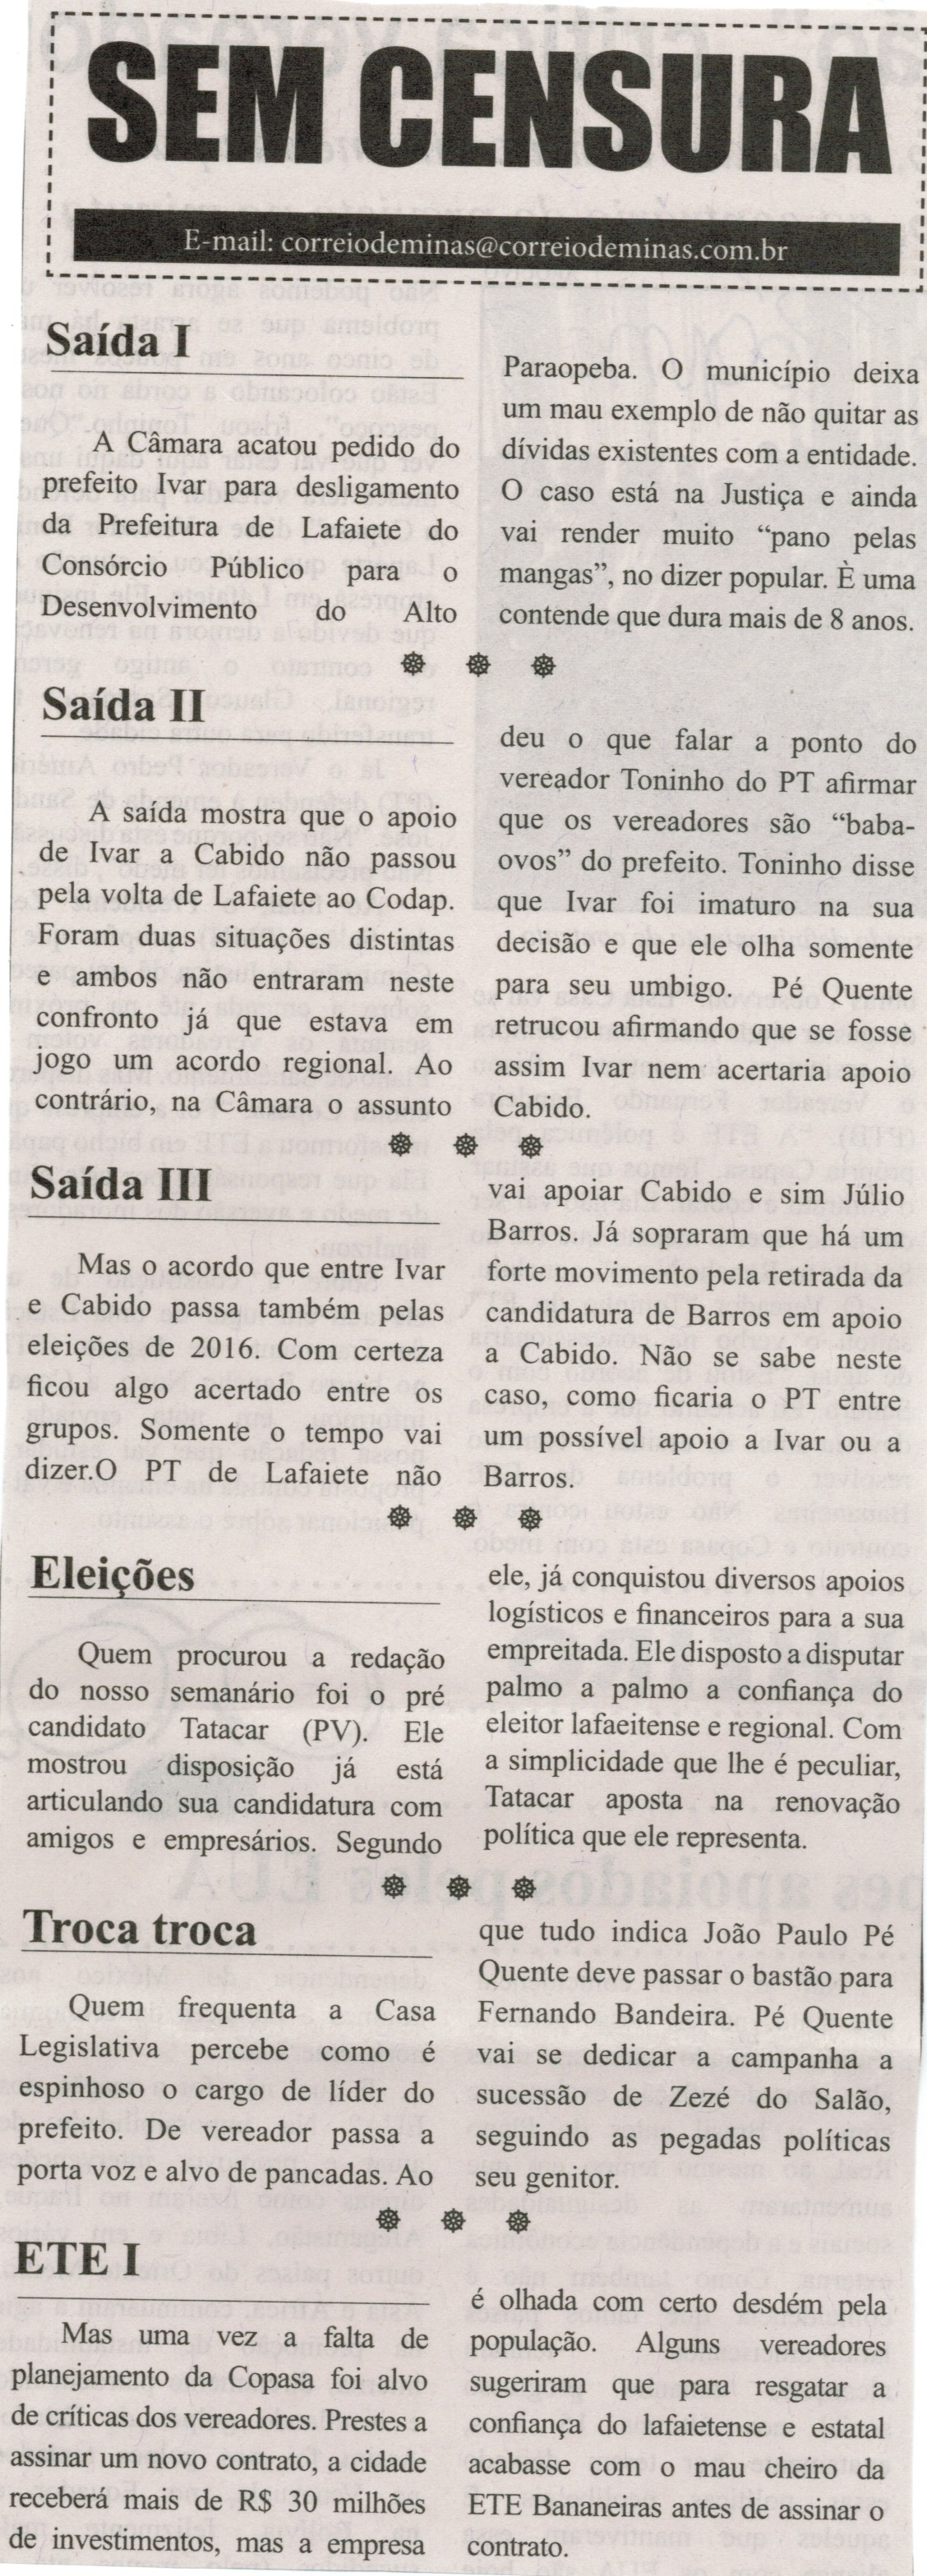 Saída I; Saída II; Saída III; Eleições; Troca troca;  ETE I.Jornal Correio da Cidade, Conselheiro Lafaiete,  03 mai. 2014, Sem Censura, p. 3.